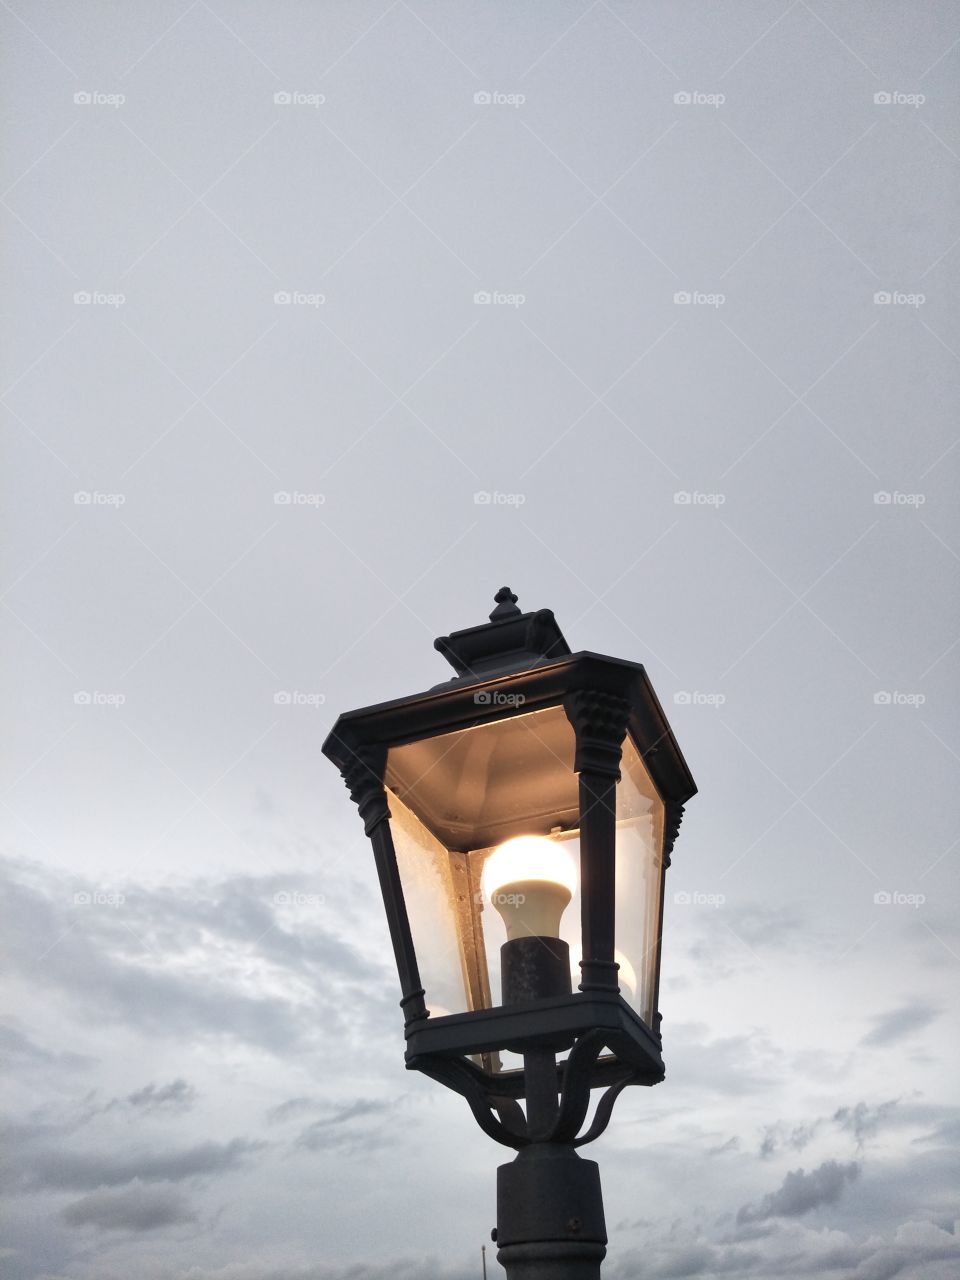 Lamp, No Person, Sky, Architecture, Snow